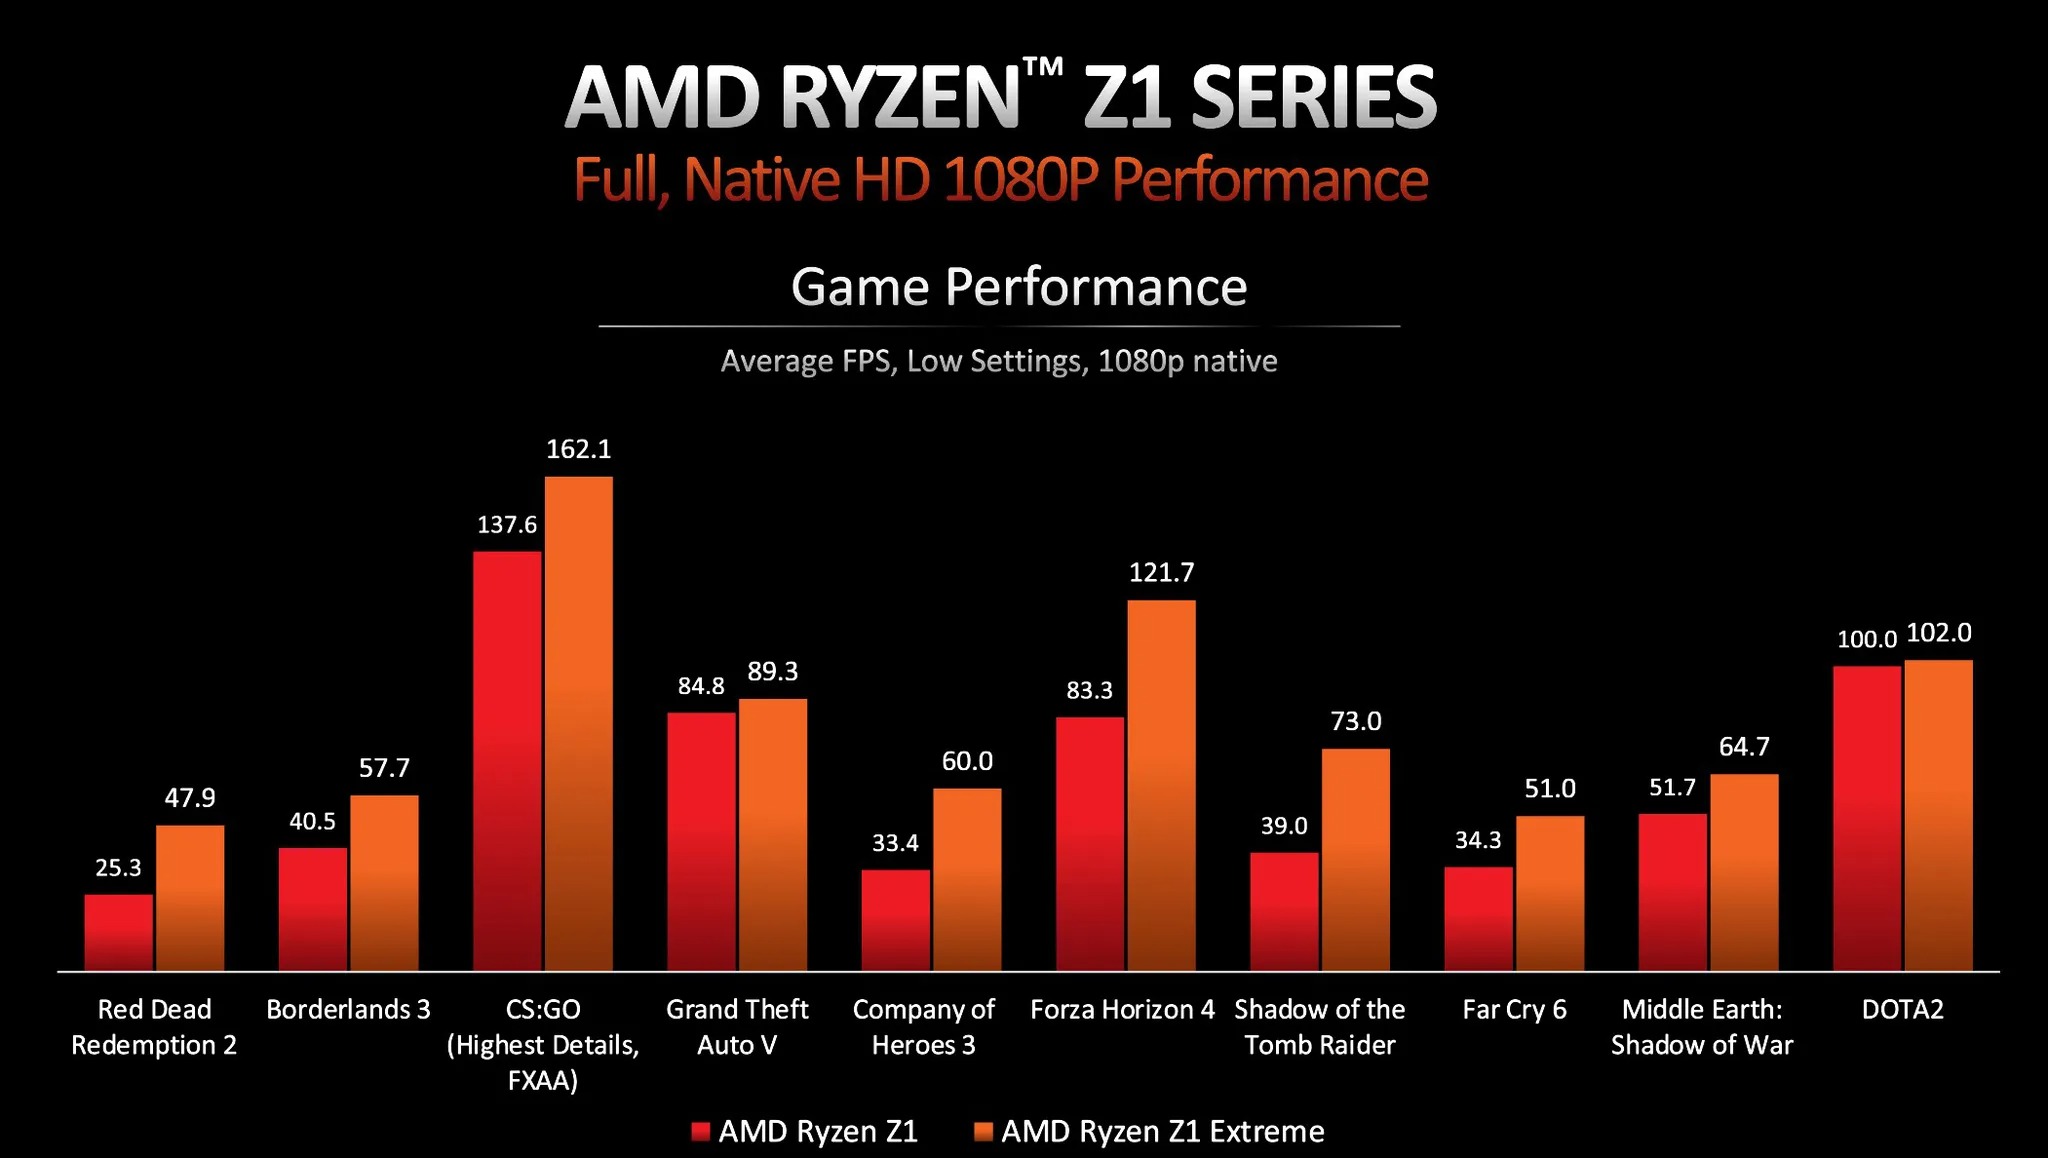 AMD-RYZEN-Z1-SERIES-2.jpg